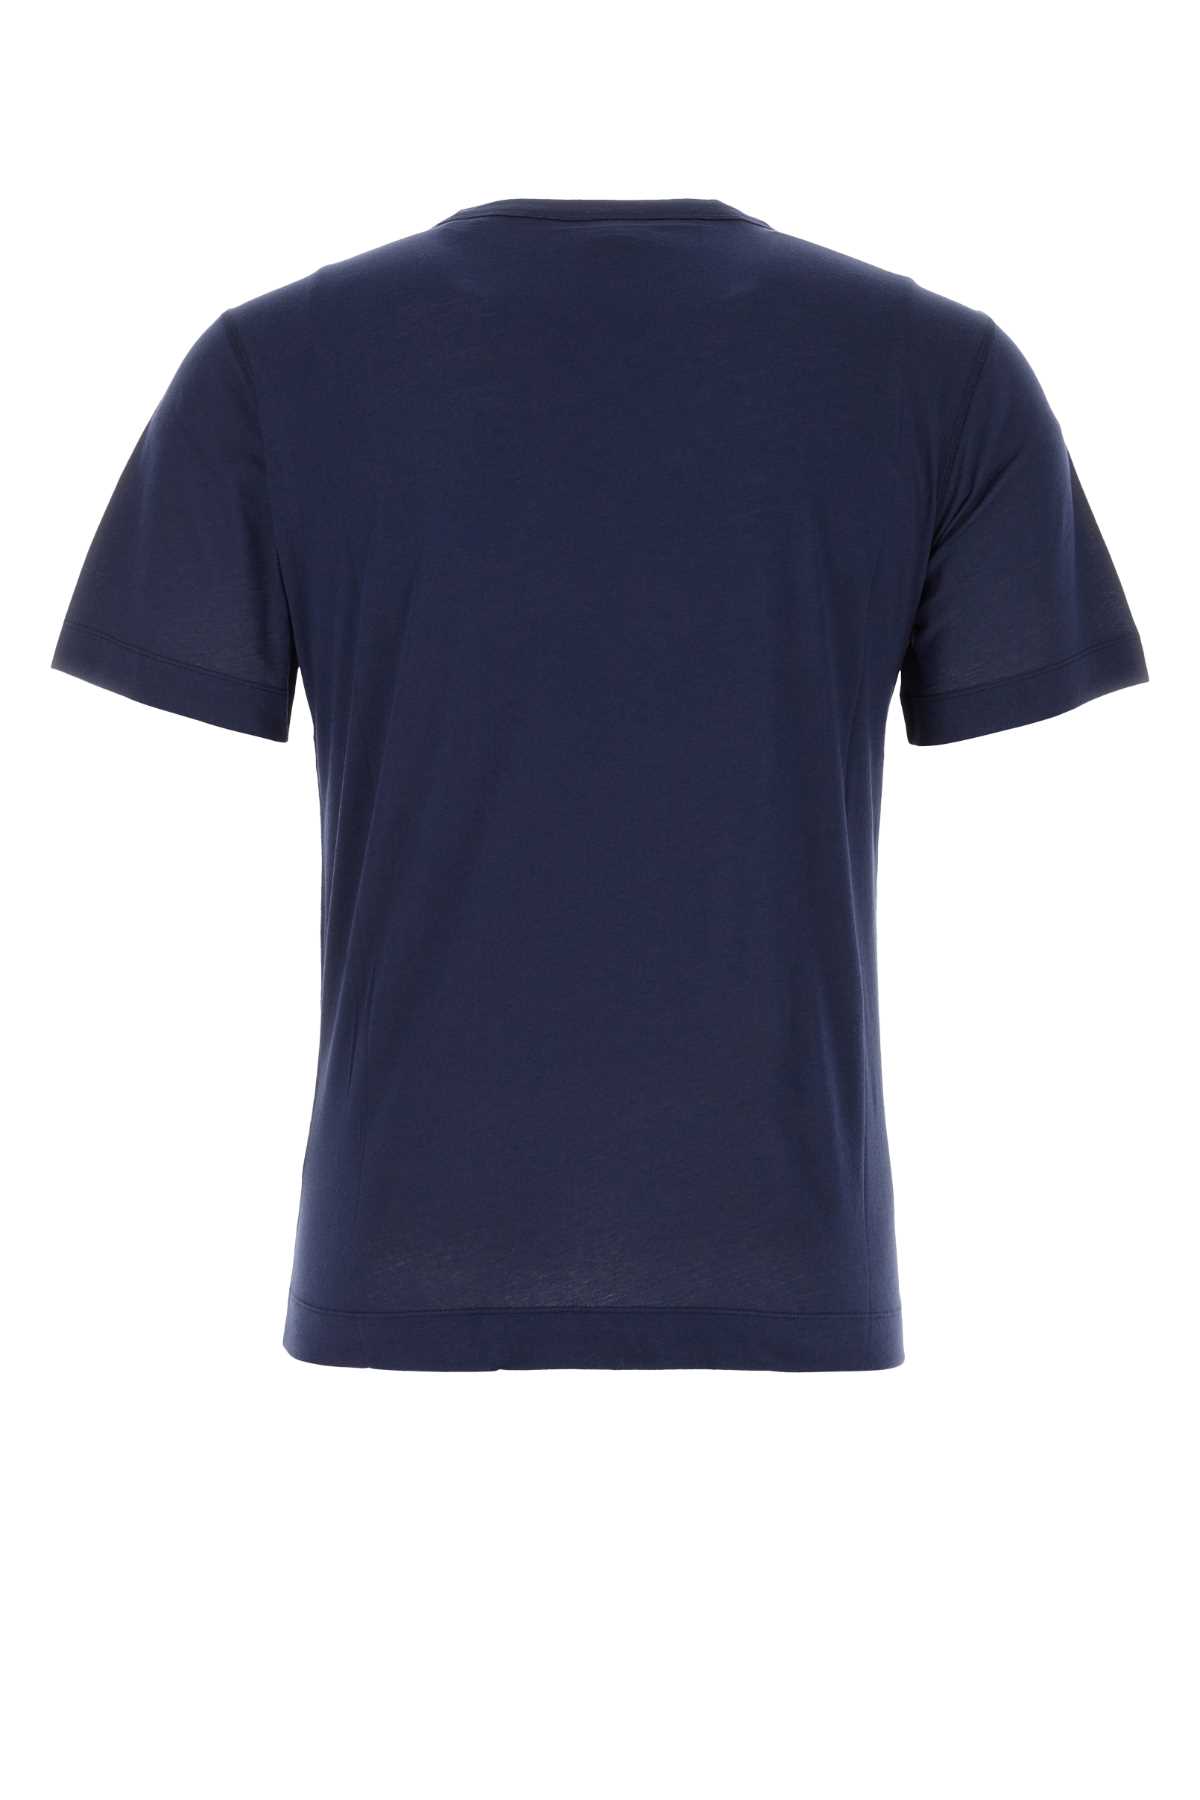 Dries Van Noten Navy Blue Cotton T-shirt In Dark Blue